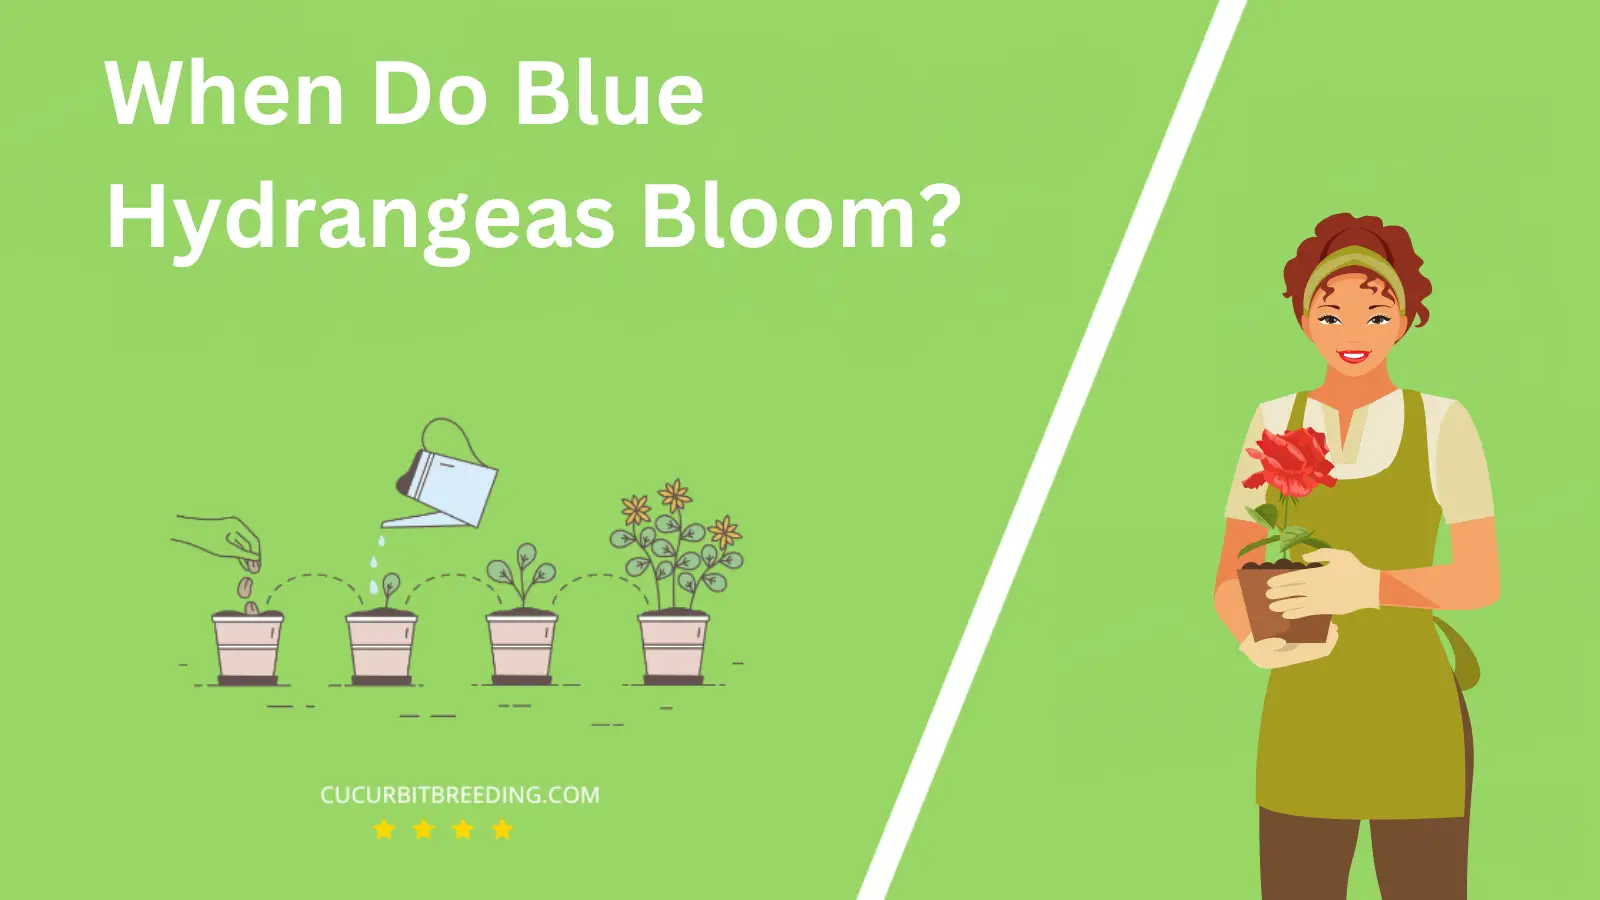 When Do Blue Hydrangeas Bloom?